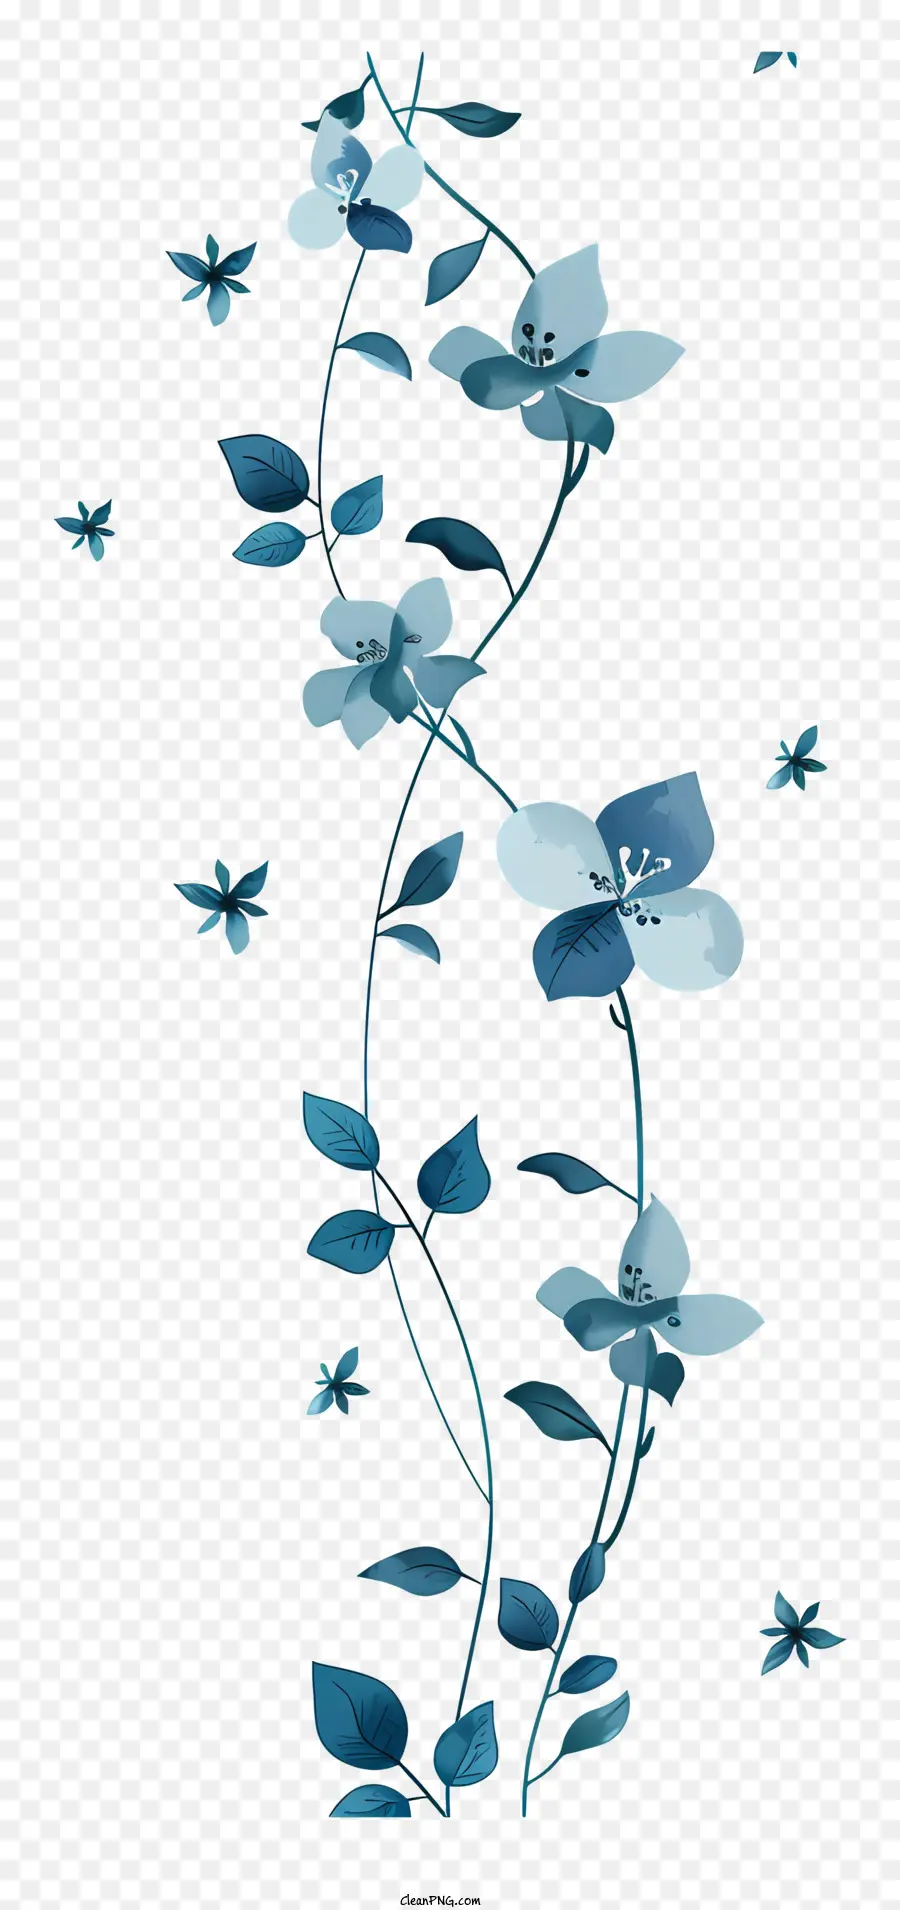 Vườn hoa - Vine hoa màu xanh xoắn quanh lưới mắt